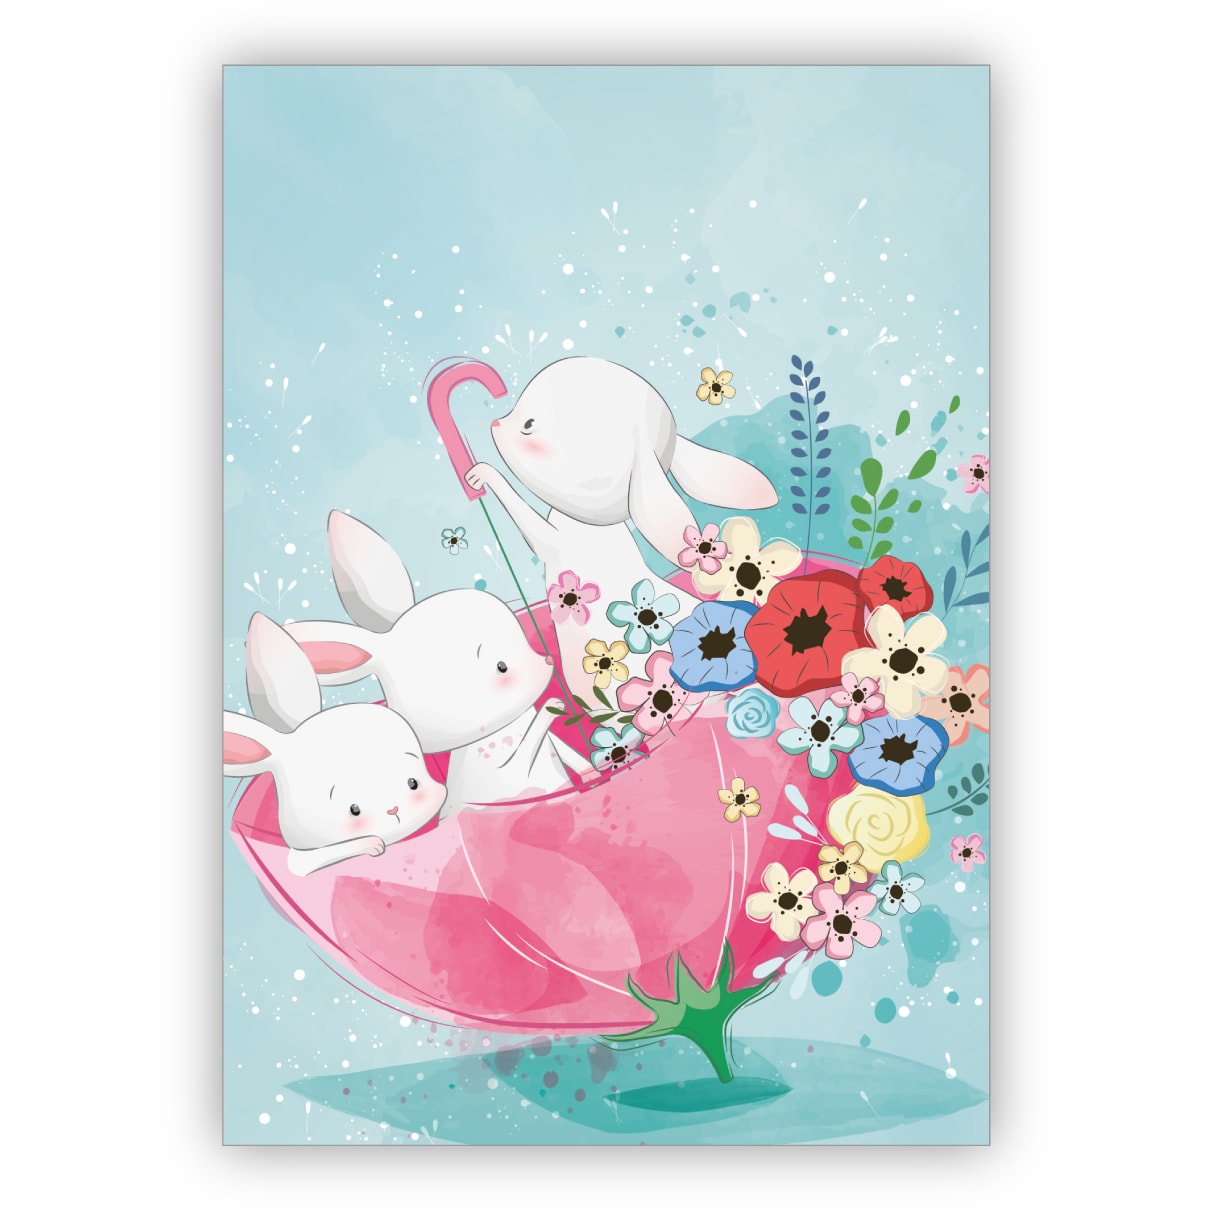 Süße Grußkarte mit kleinen Hasen & Blumen im Regenschirm auch als Osterkarte